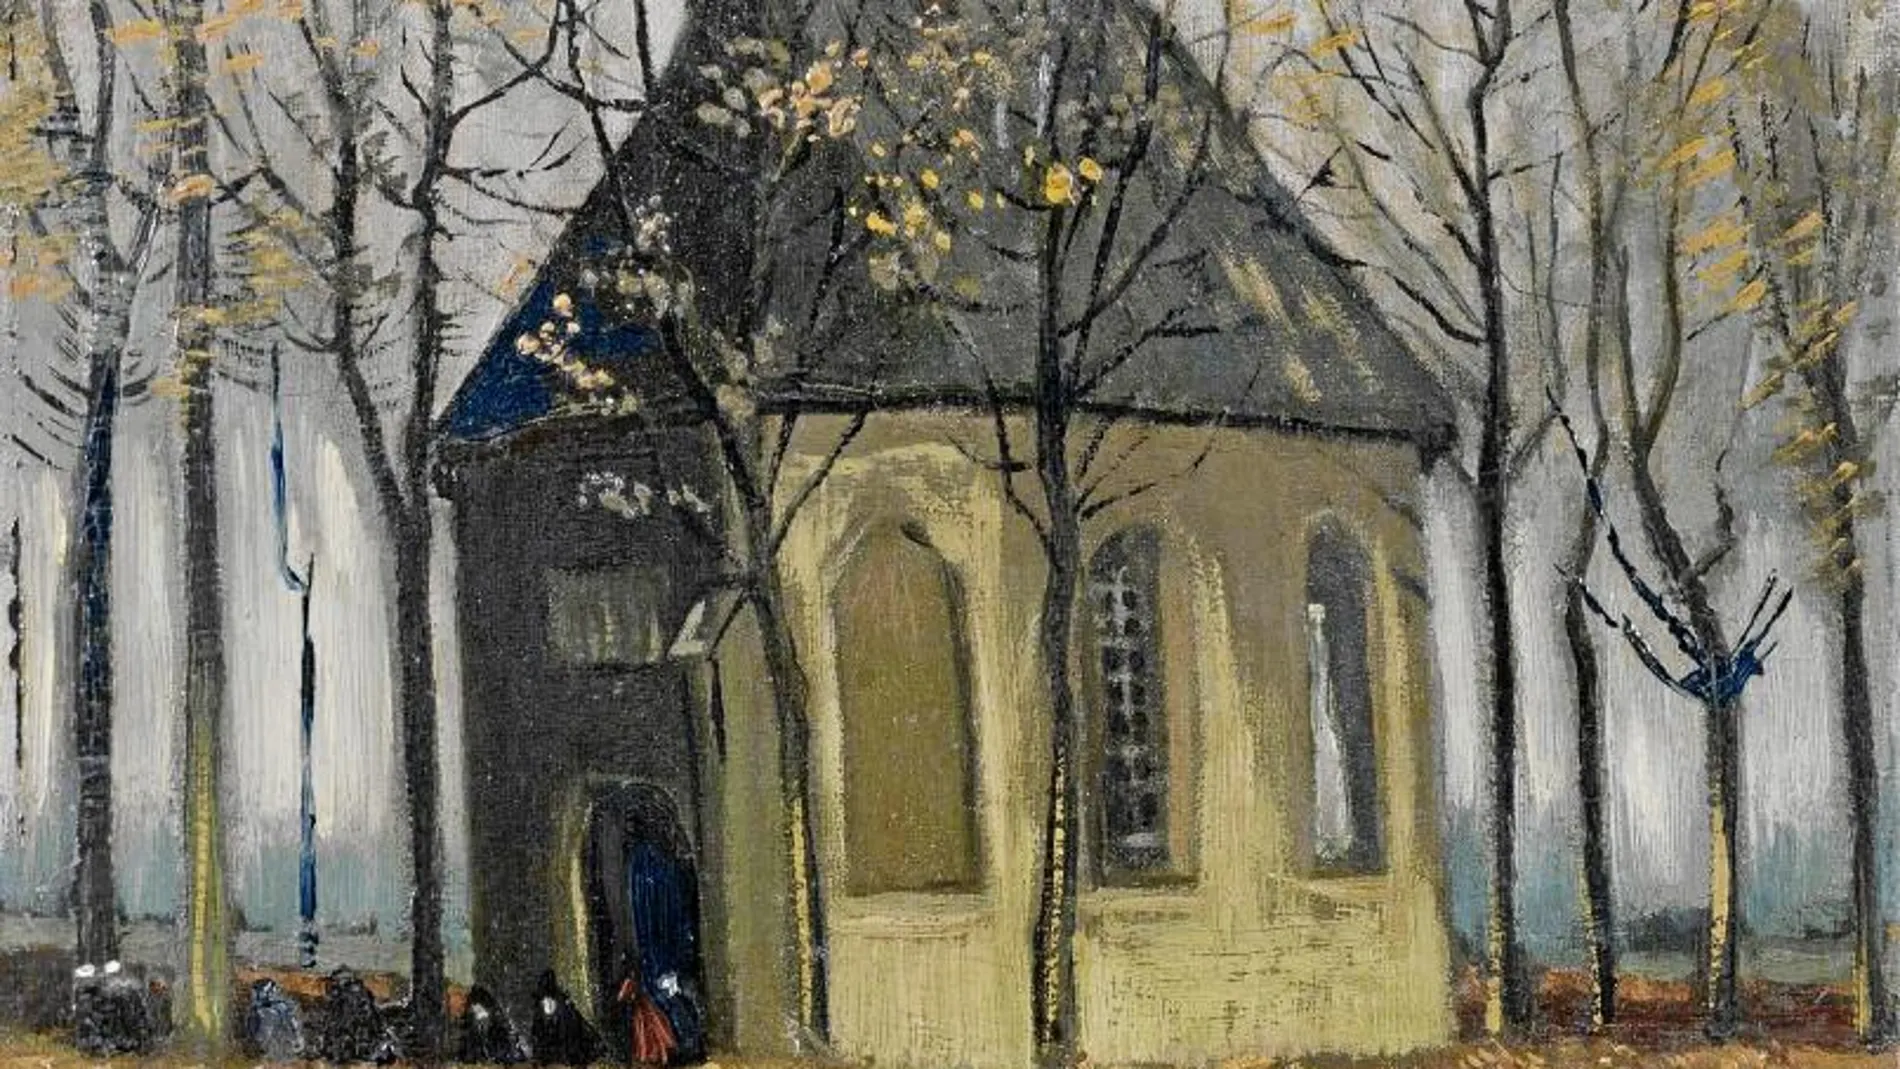 «Congregación saliendo de la iglesia reformada en Nuenen», pintado por Van Gogh en 1884